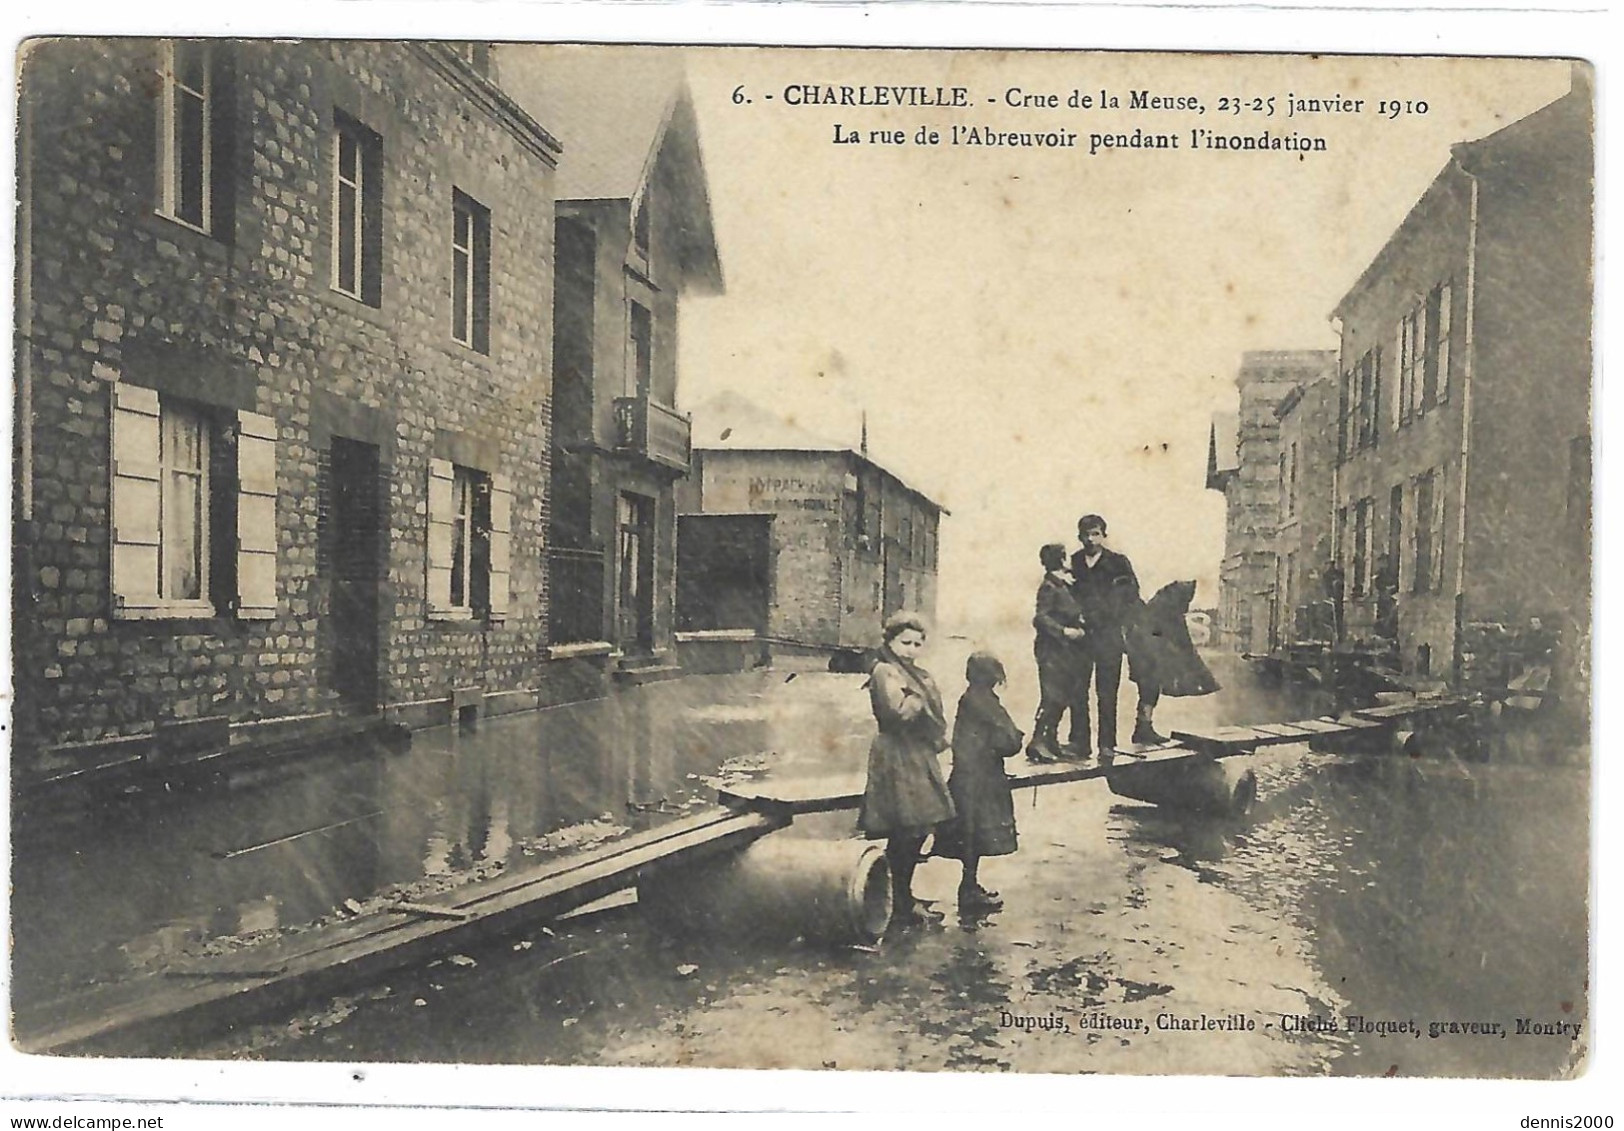 CHARLEVILLE (08) - Crue De La Meuse, 23-25 Janvier 1910 - La Rue De L' Abreuvoir Pendant L'inondation - Ed. Dupuis - Charleville